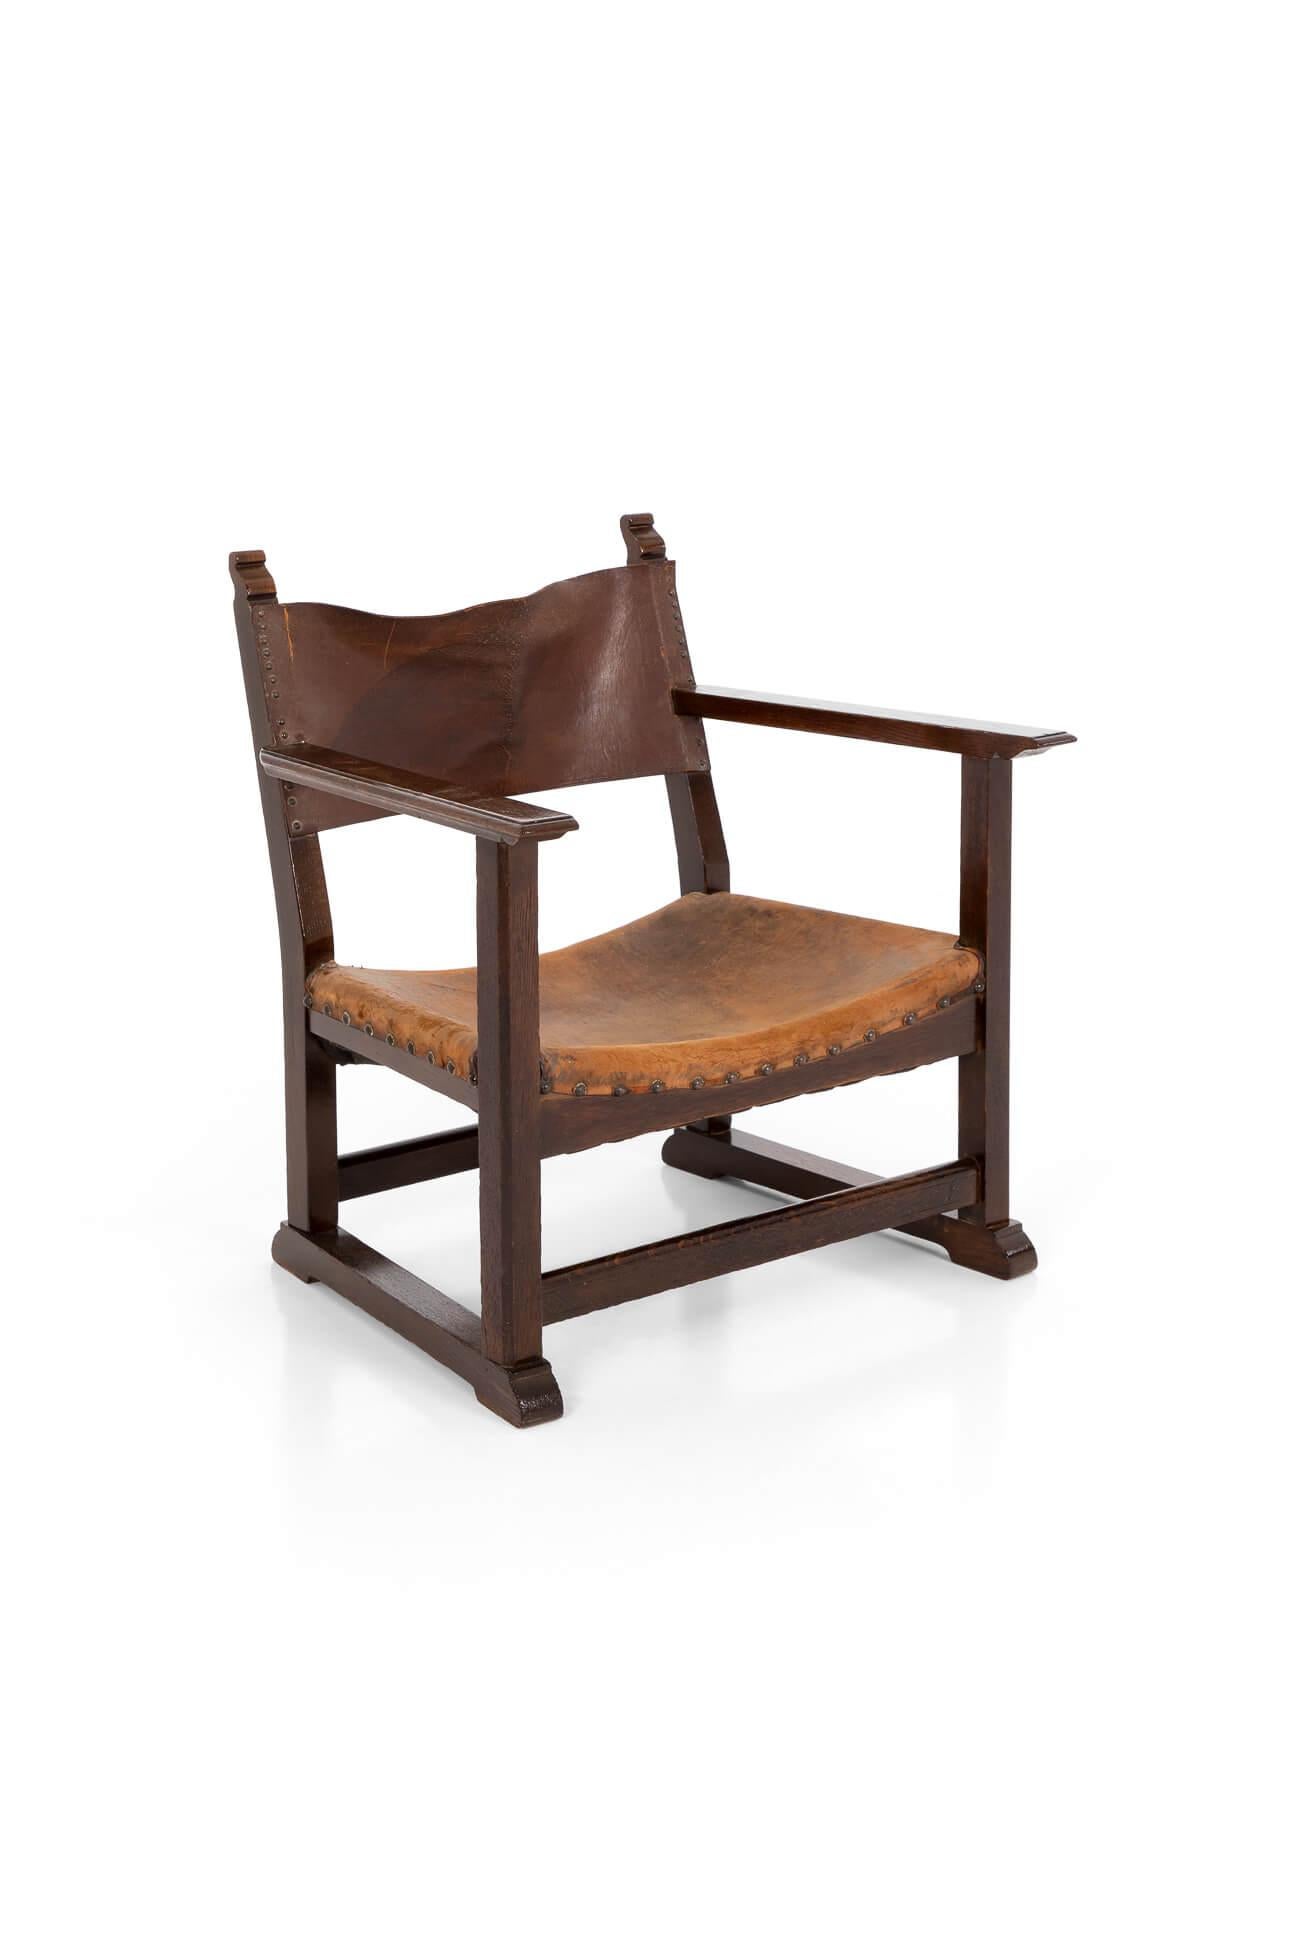 Un merveilleux fauteuil de cheminée Adolf Loos et Heinrich Kulka pour Friedrich Otto Schmidt en noyer. Le fauteuil de cheminée est considéré comme l'un des modèles les plus importants du mouvement Arts and Crafts. Adolf Loos a été l'un des grands